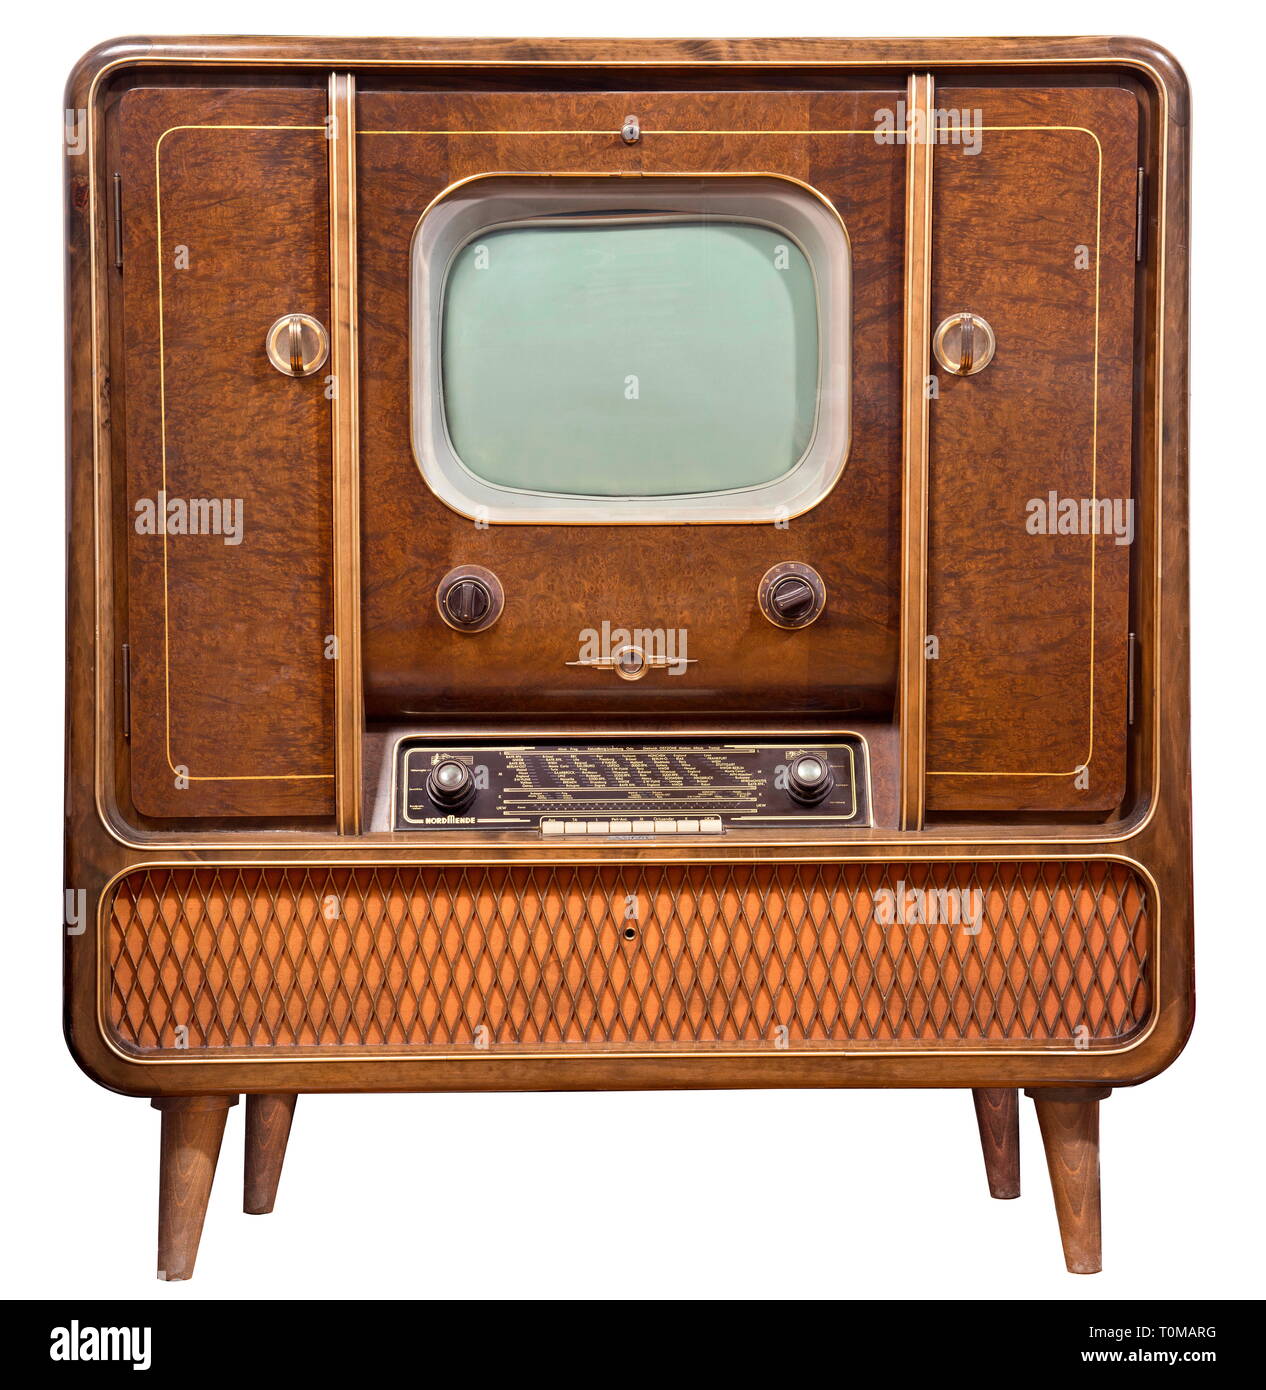 La radiodiffusion, la télévision, la publicité, Kuba typ Lohengrin, Allemagne, 1954, Additional-Rights Clearance-Info-Not-Available- Banque D'Images